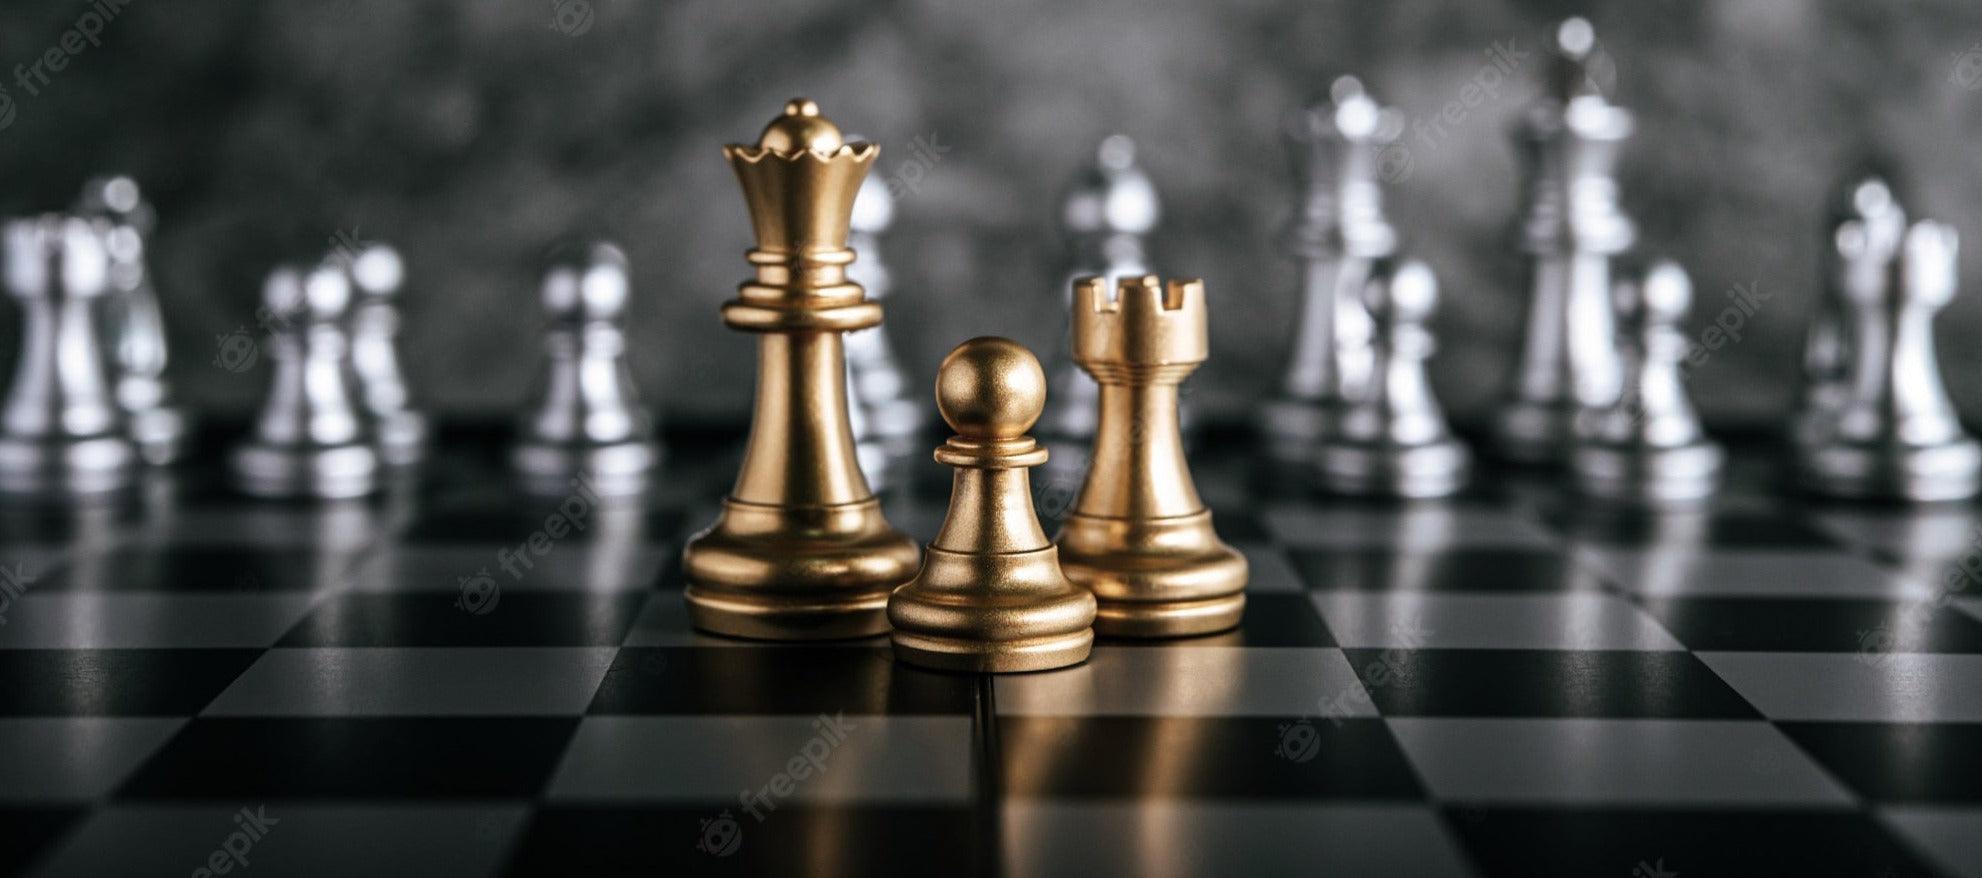 3 em 1 Xadrez magnético de Viagem, Damas Anglo-Americanas, jogo de Xadrez  com Xadrez com tabuleiro - China Jogo de tabuleiro e Xadrez preço